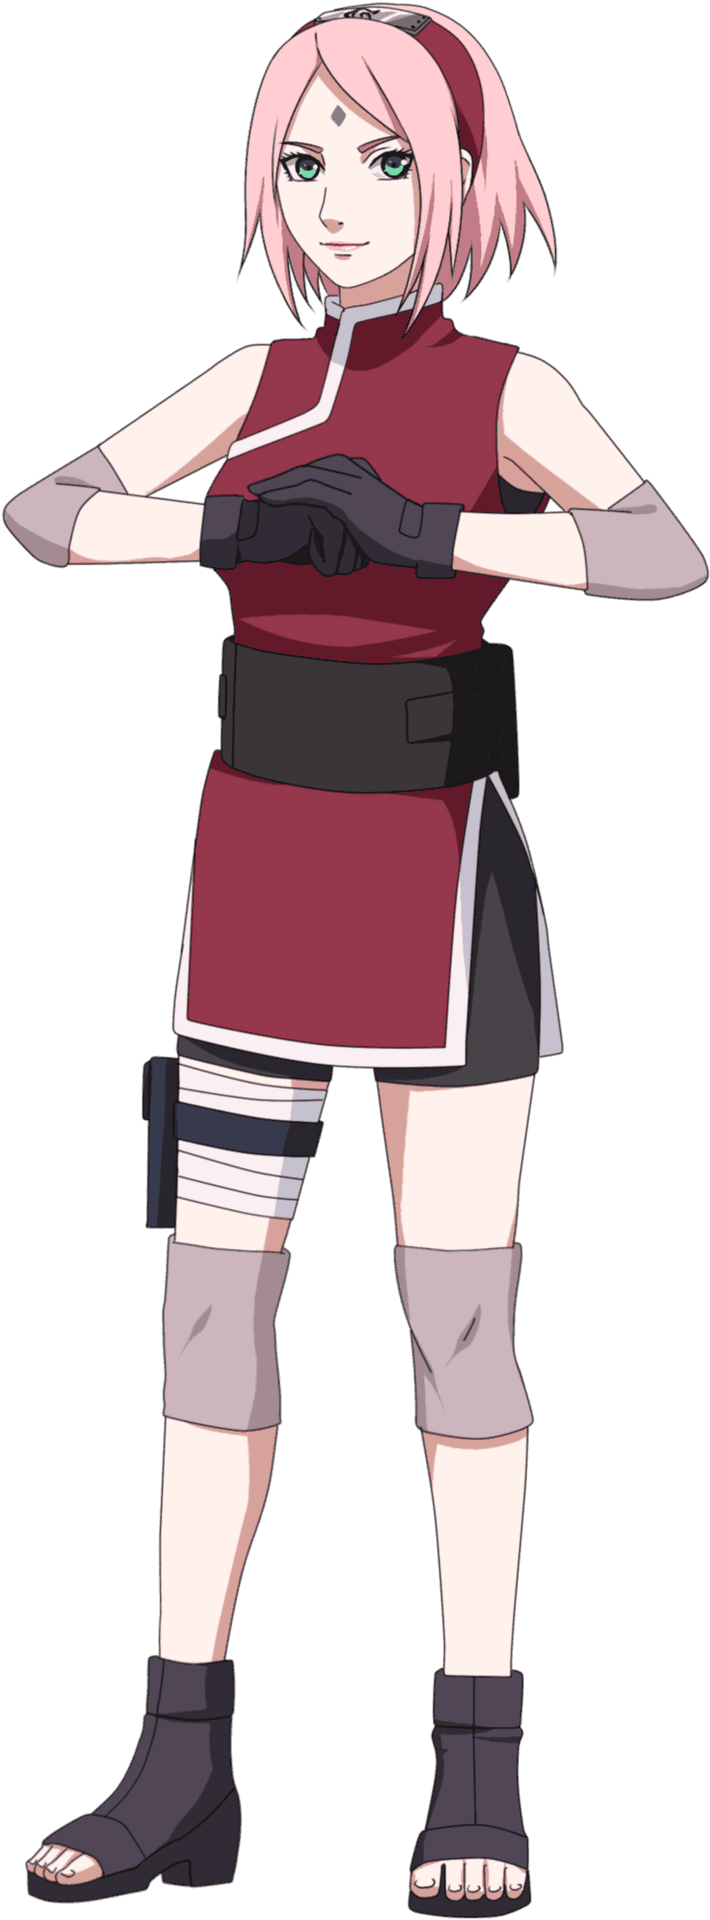 Anime Ninja Girl Standing Pose PNG